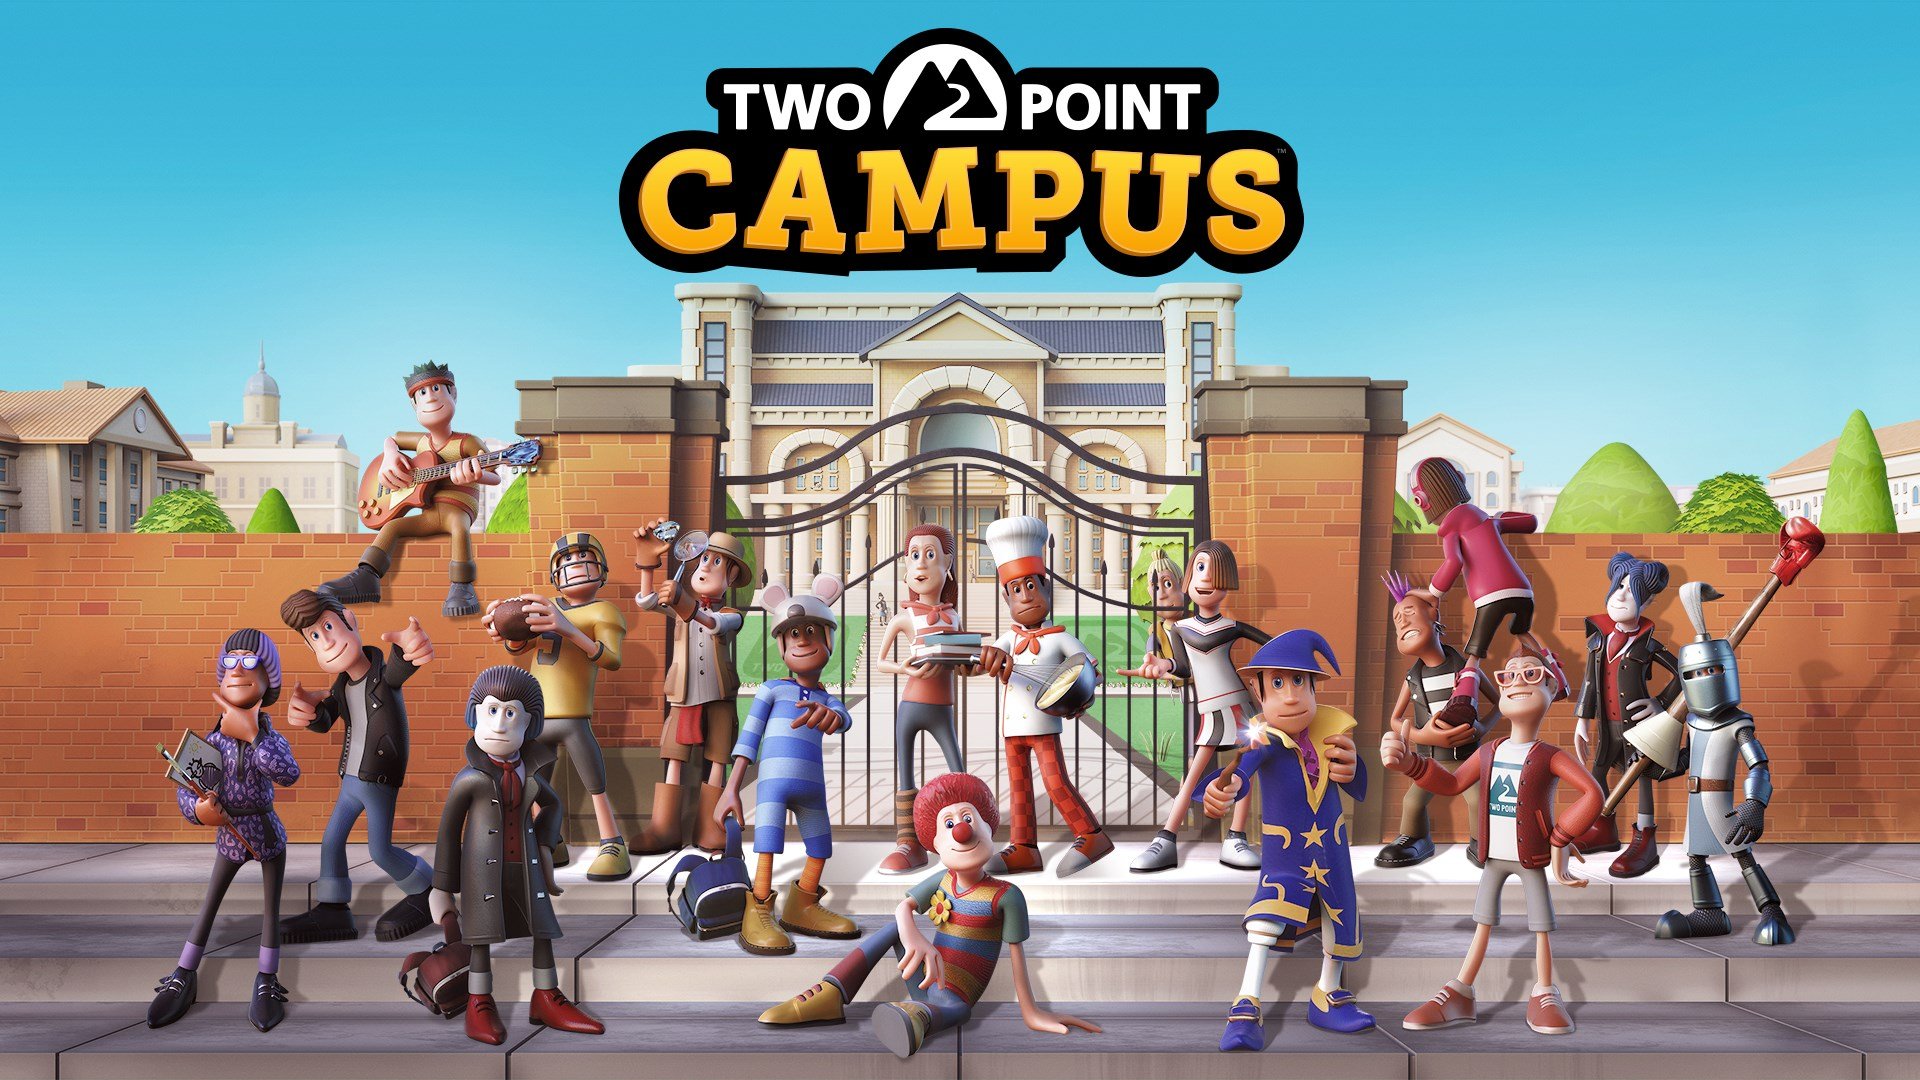 Two Point Campus เกมสร้างและบริหารมหาวิทยาลัยสุดป่วน จากผู้สร้าง Two Point Hospital ปล่อยตัวอย่างเปิดตัว พร้อมกำหนดวางขายในปี 2022